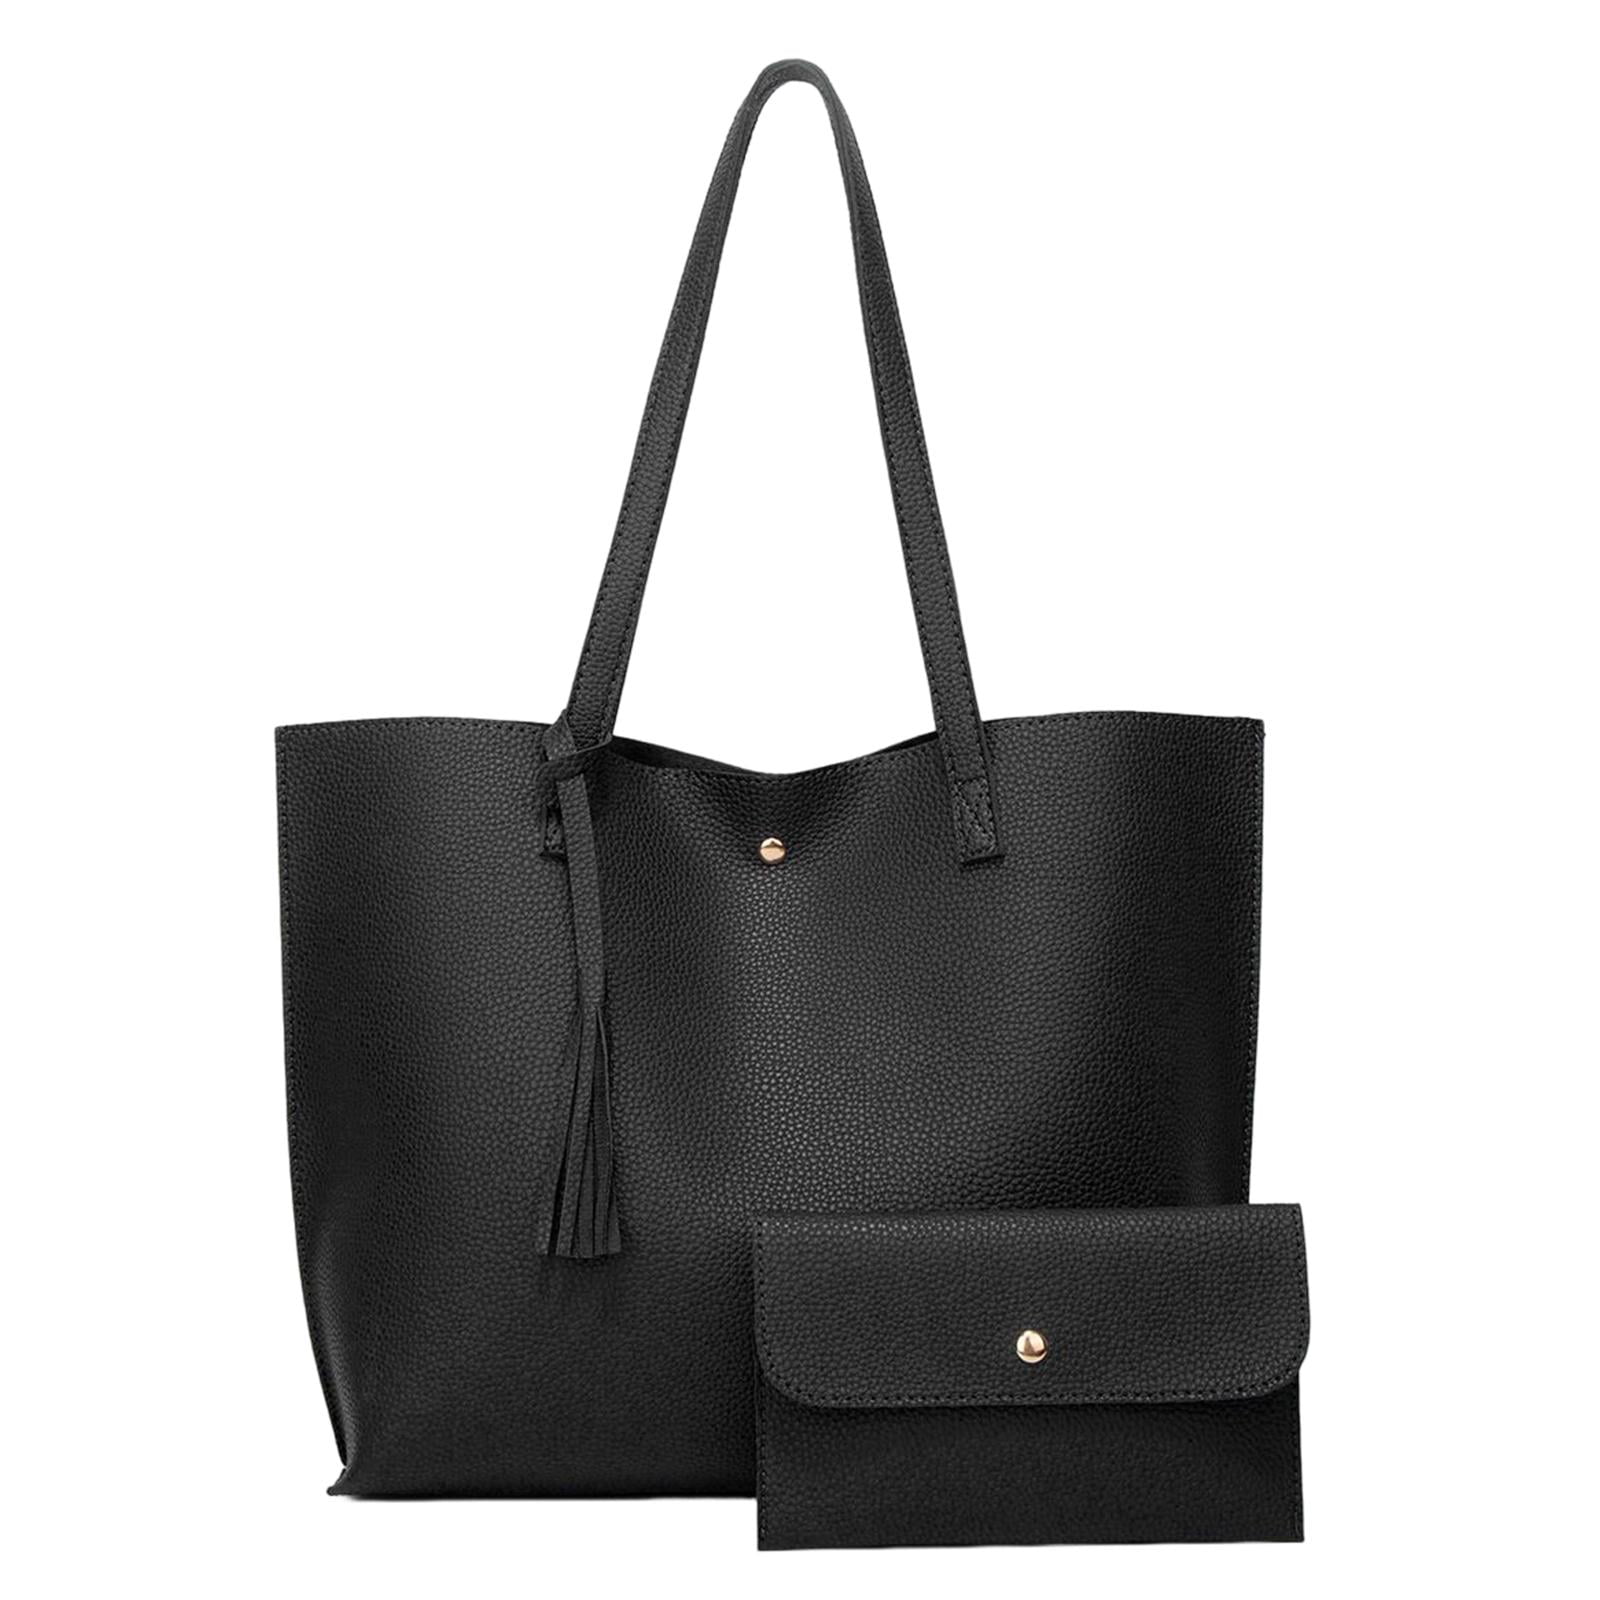 NEW Large Leather Tote Orange Bag Club Wear Shoulder Strap Big Purse  Designer | eBay